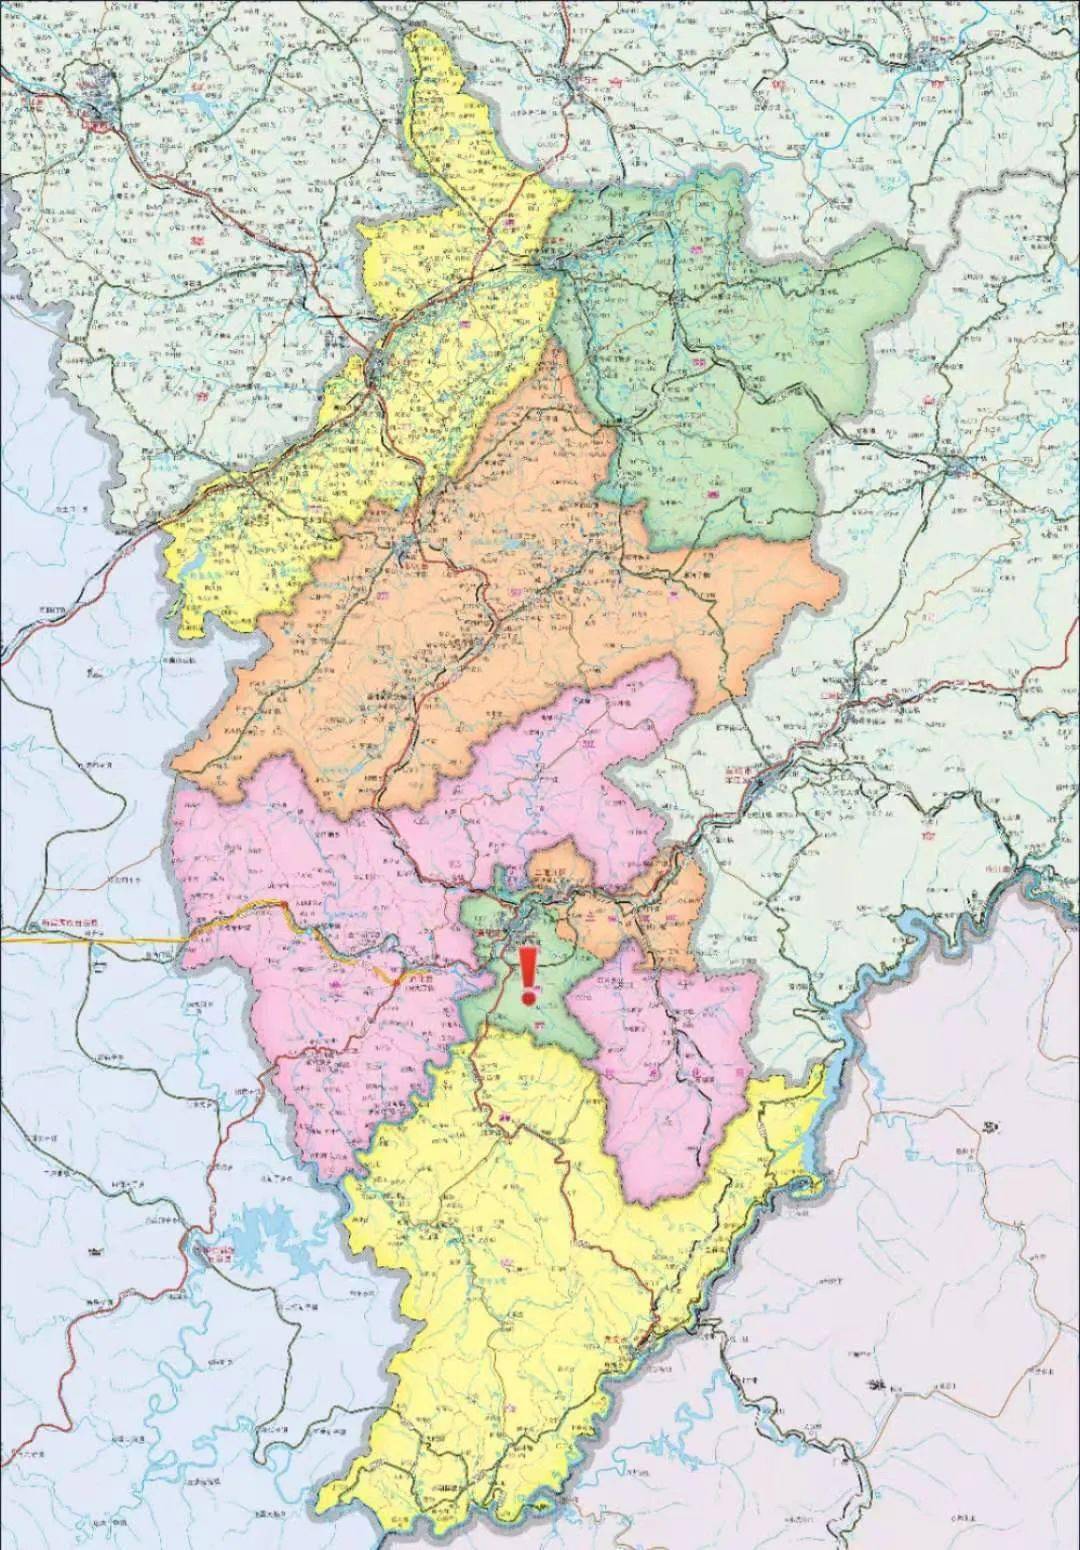 通化市地图,中心为东昌区(标注的绿色区域),东北与二道江区(橙色)